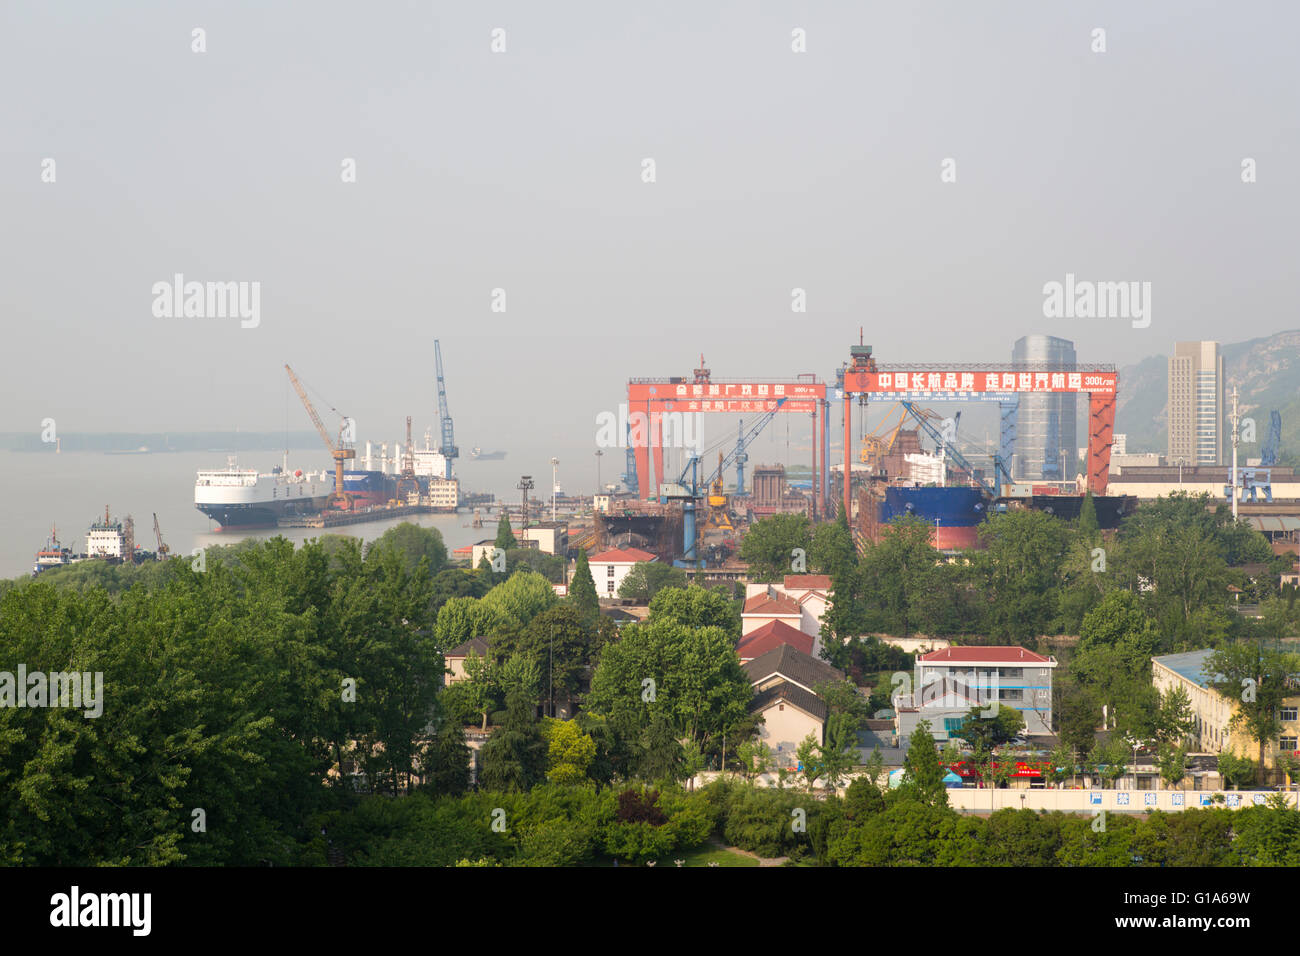 Chinese economy with Chang Jiang National Shipping shipyard along the Yangtze river in Nanjing, China Stock Photo